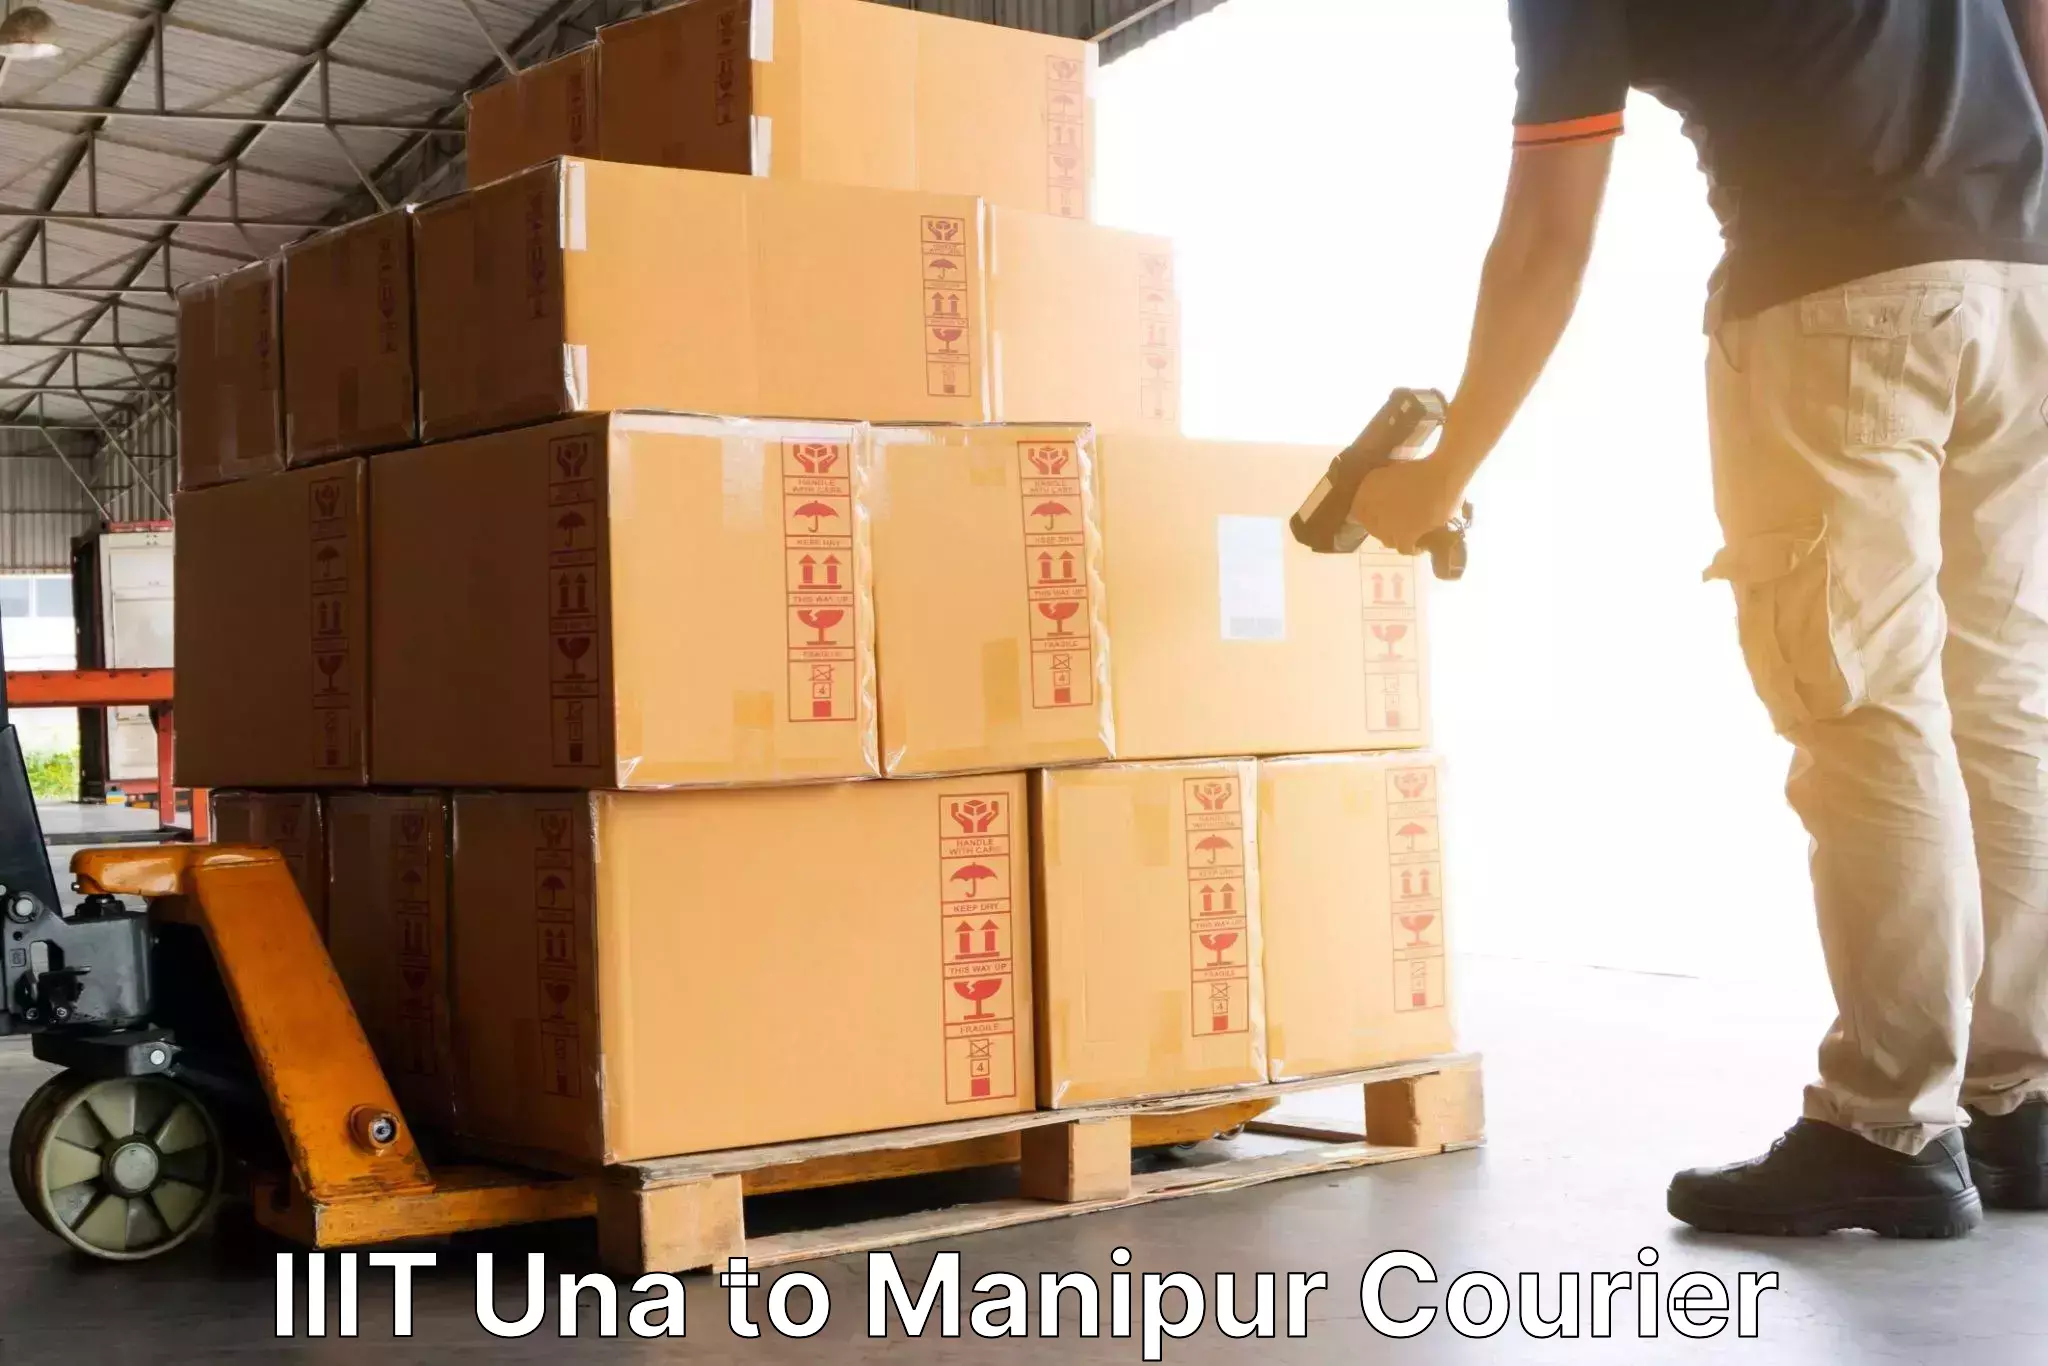 Supply chain delivery IIIT Una to Jiribam